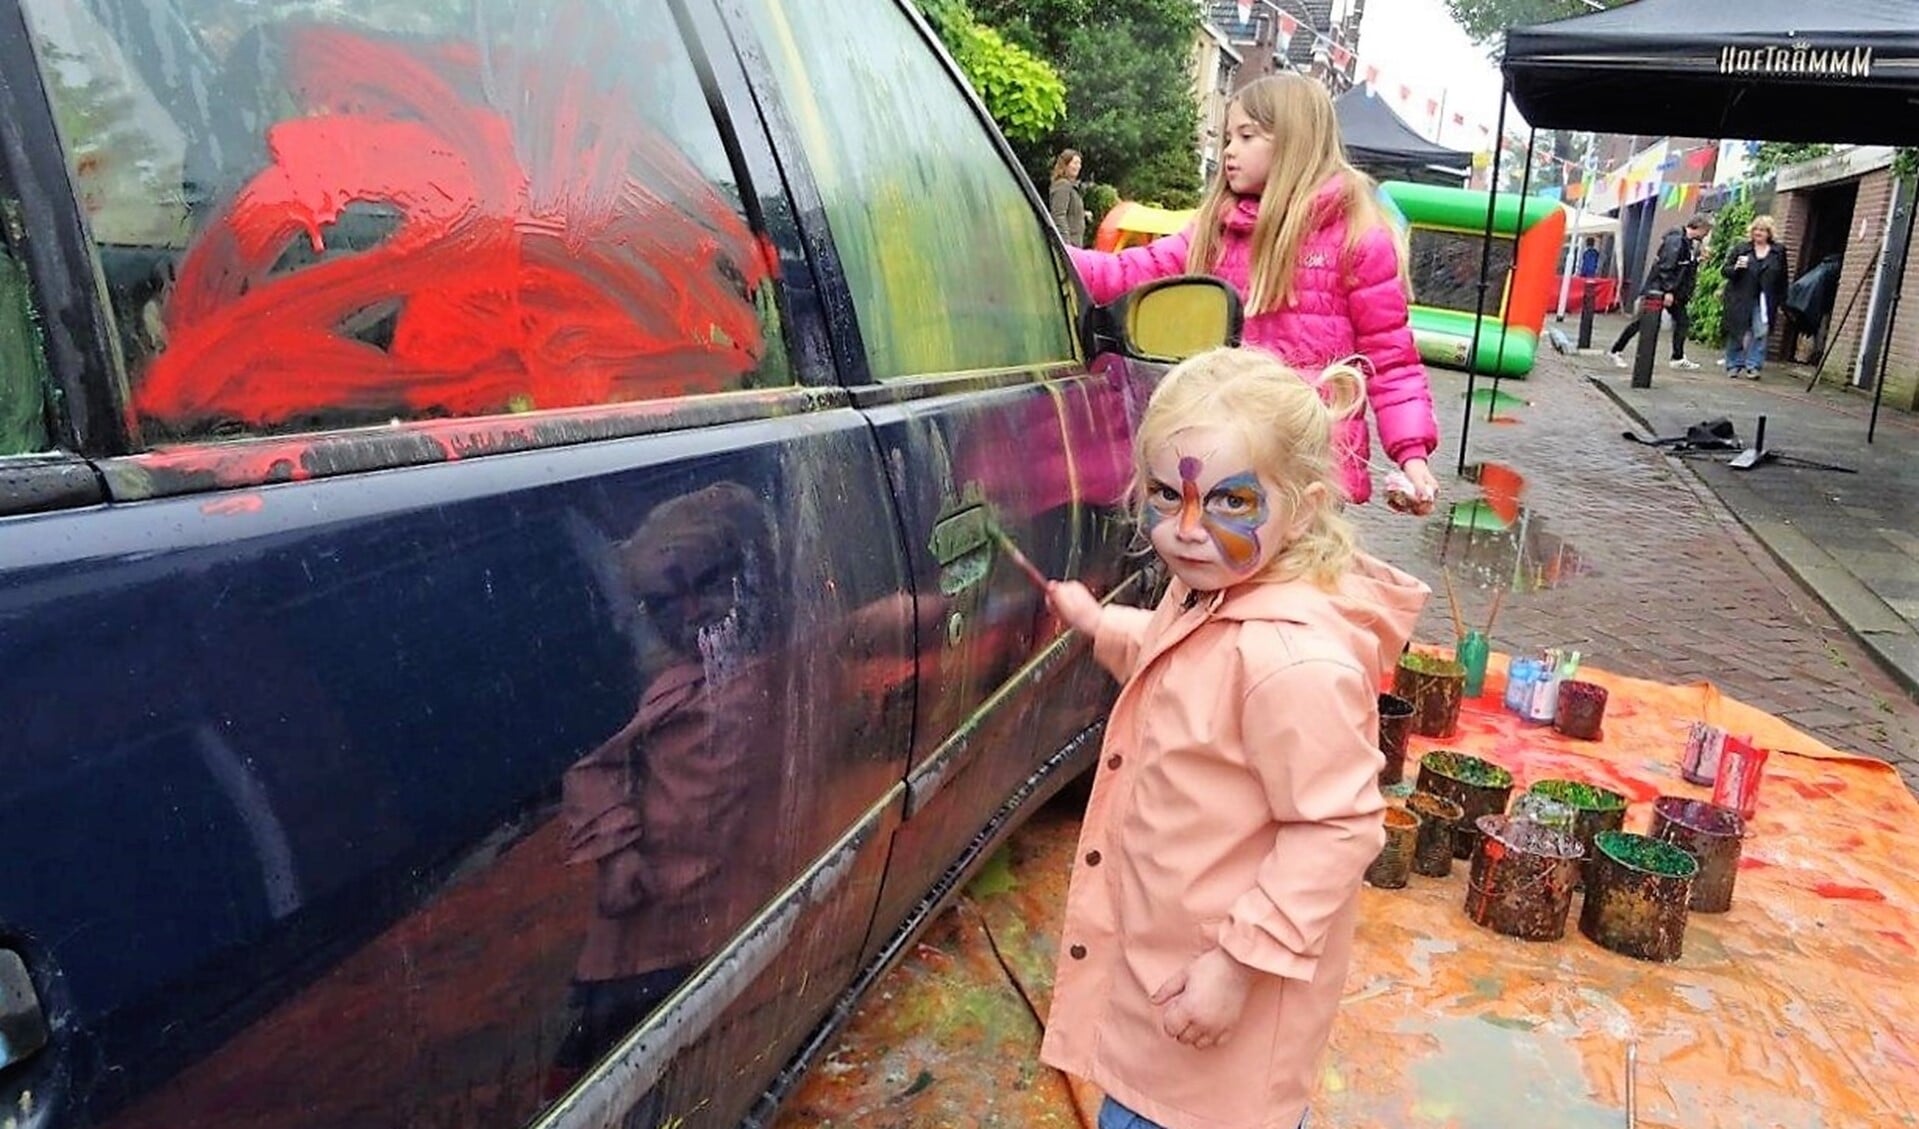 De kinderen konden een auto bekliederen om er zo een kunstwerk van te maken (foto: Ap de Heus).